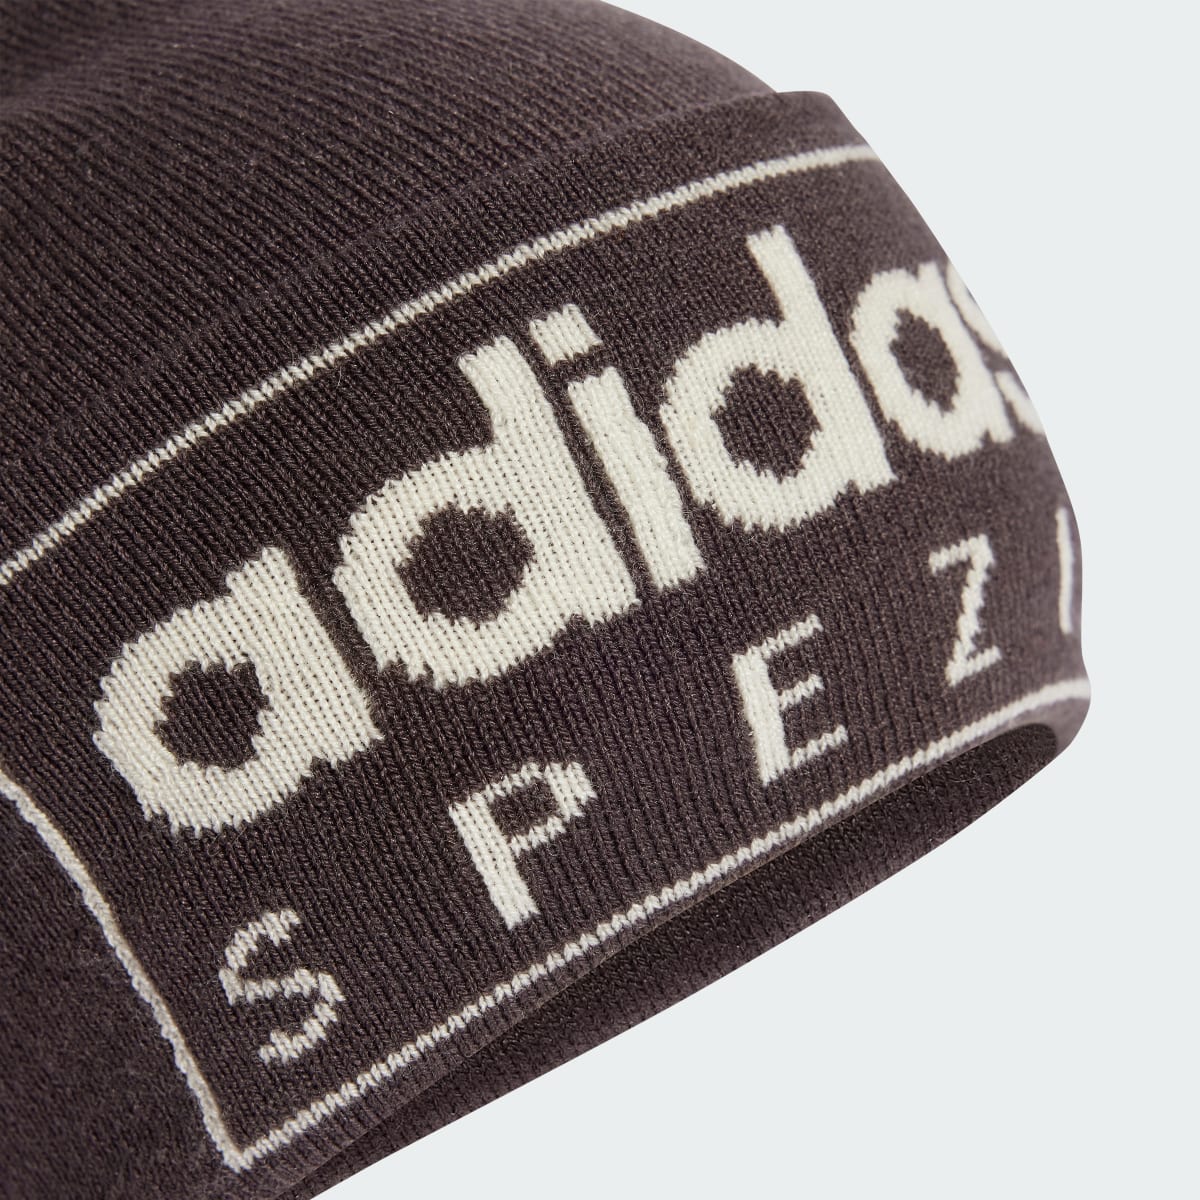 Adidas Spezial Cap. 4